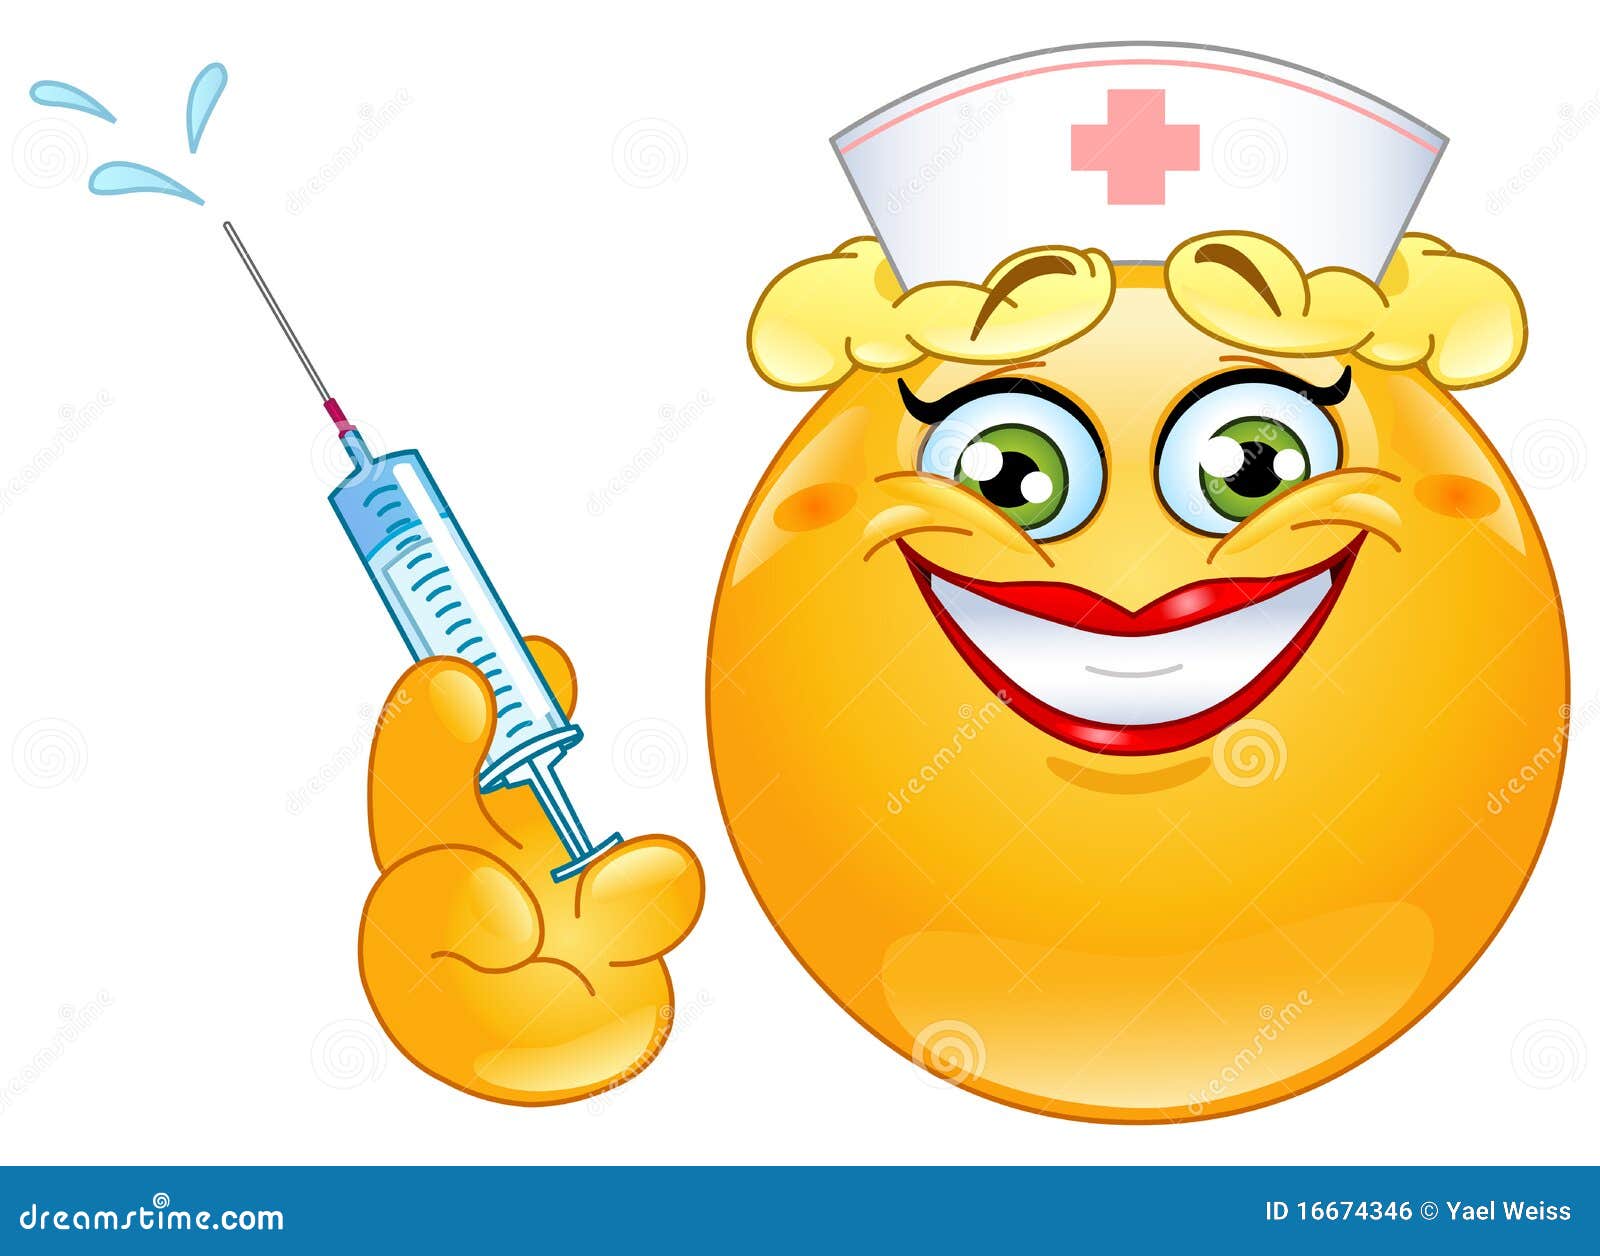 Nurse emoticon stock vector. Image of doctor, emoticon - 16674346